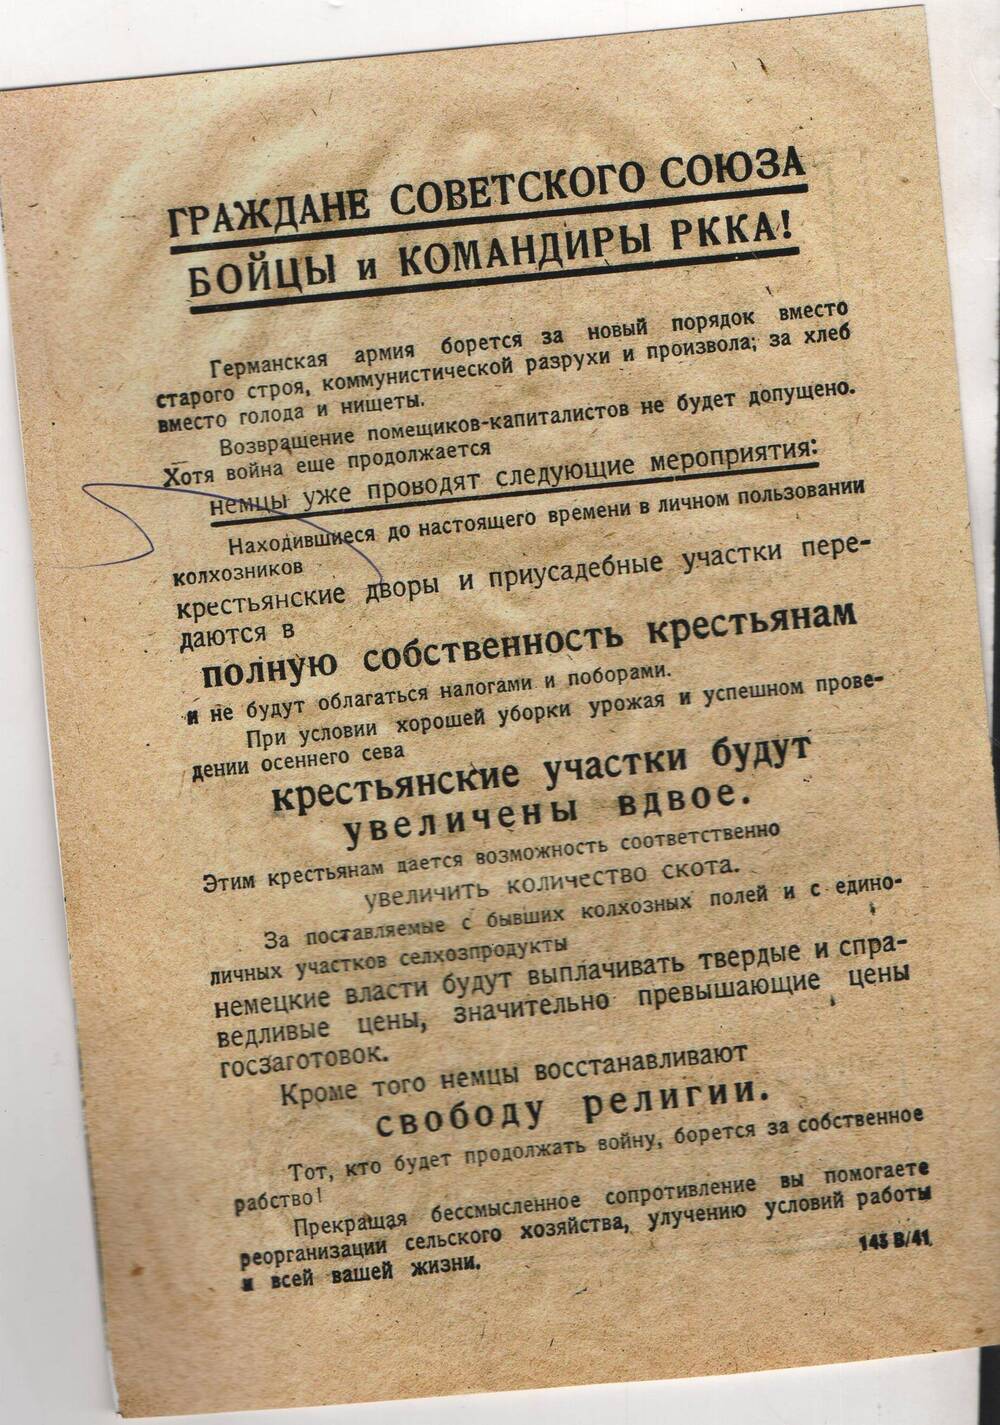 Копия фашистской листовки (1941-1945 гг.)